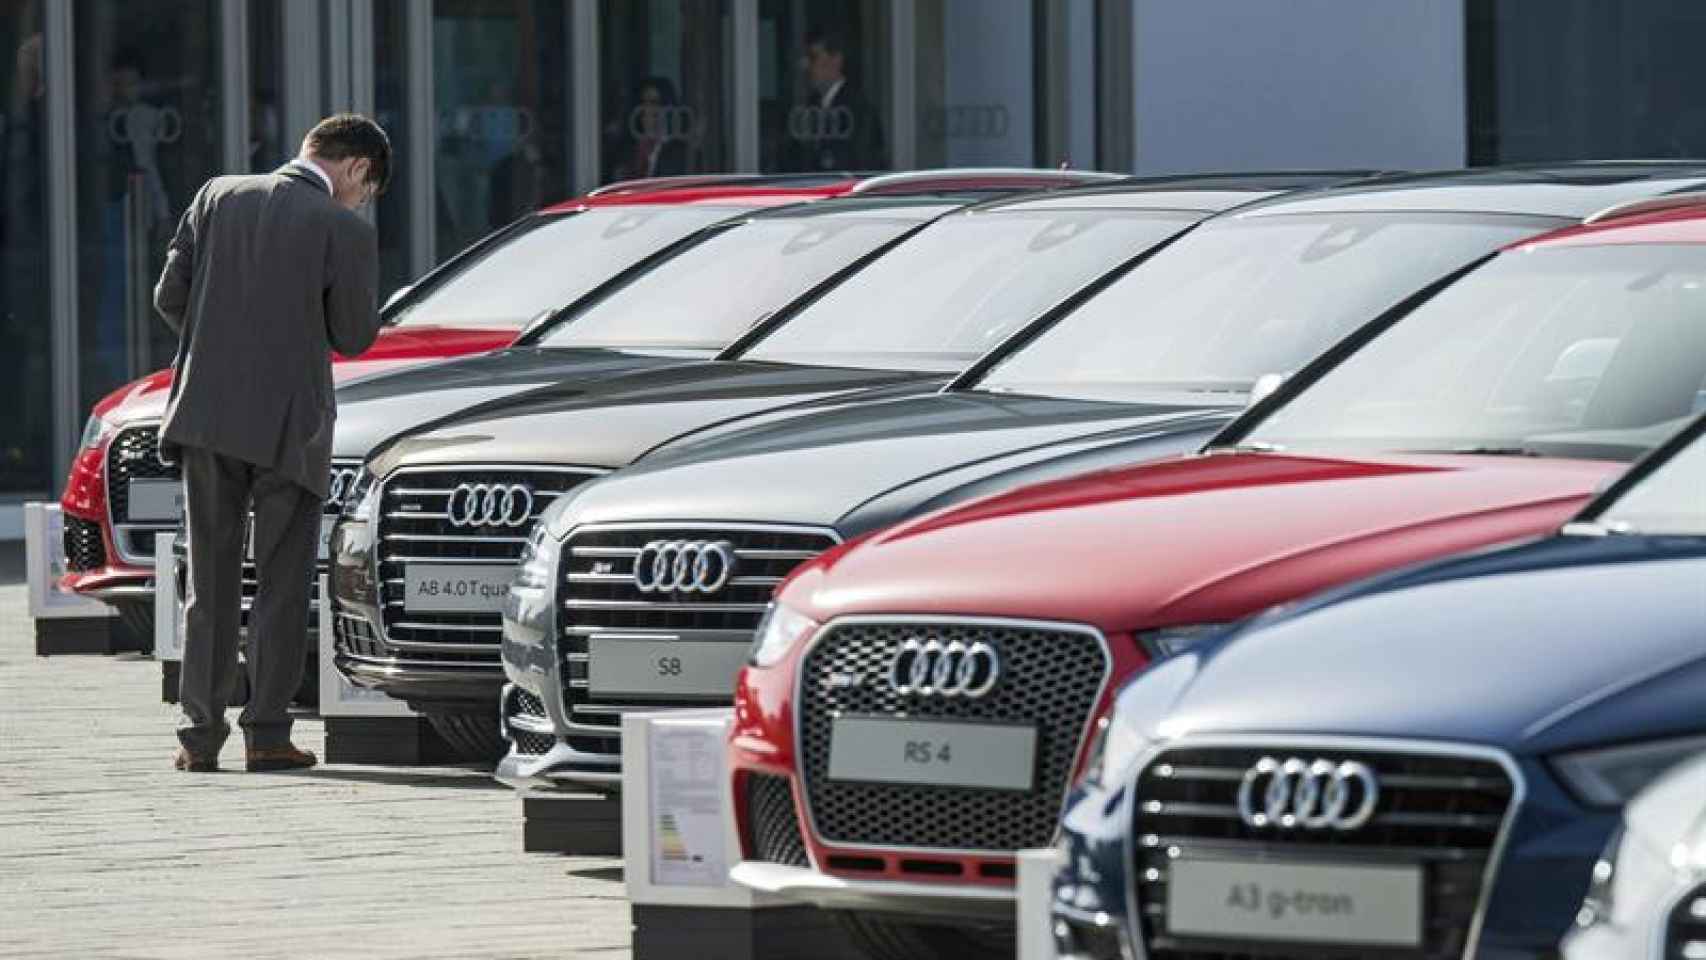 Más de dos millones de coches de la marca Audi están afectados por la manipulación.